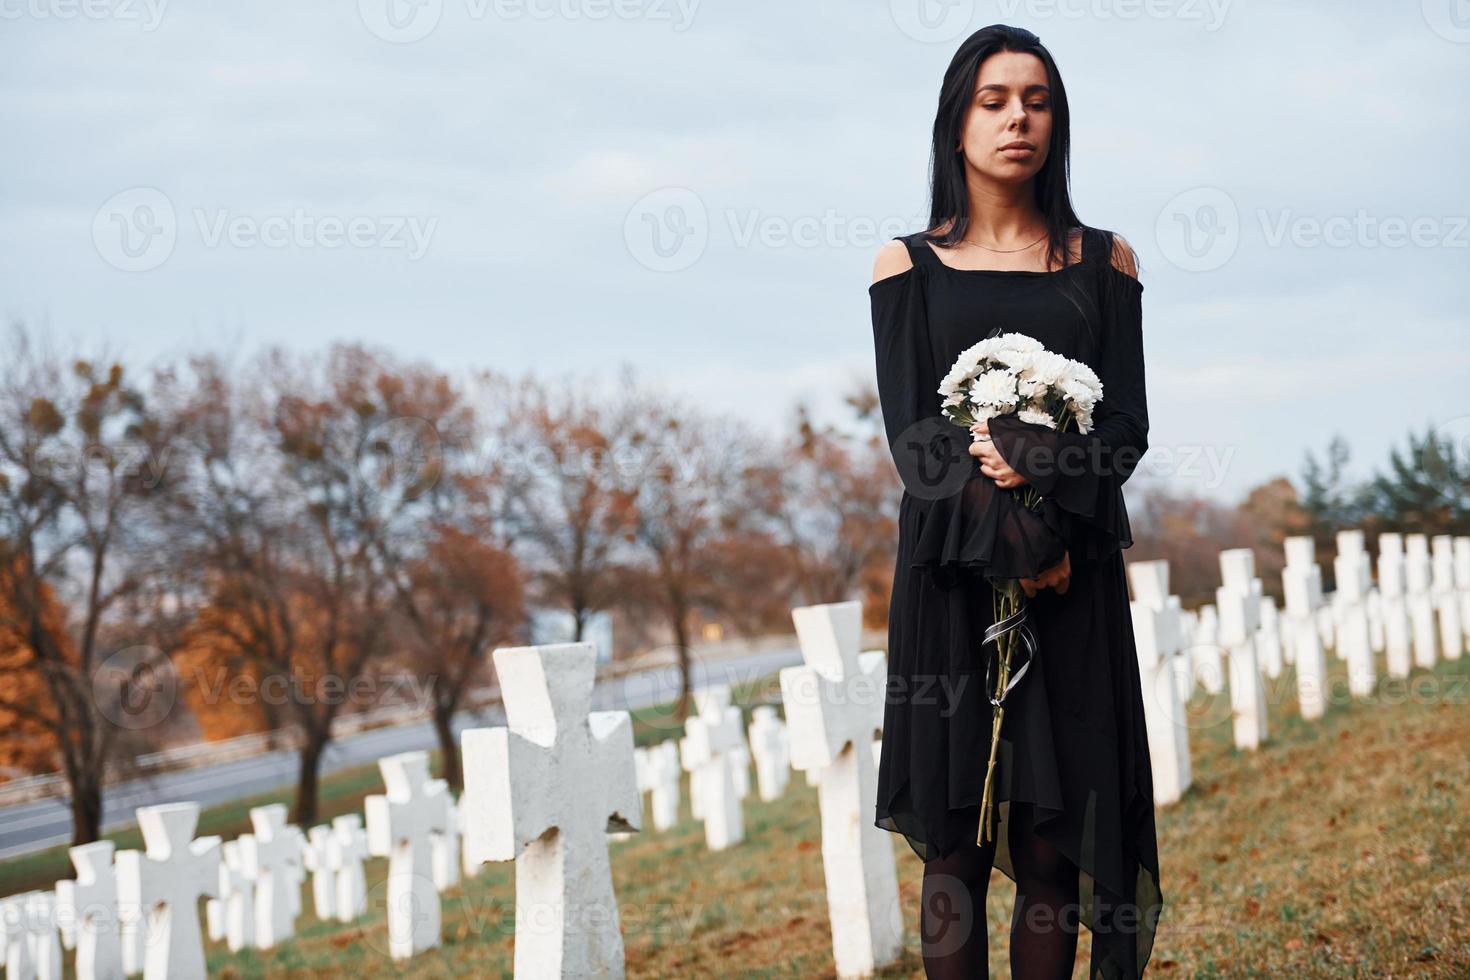 com flores nas mãos. jovem mulher em roupas pretas, visitando o cemitério com muitas cruzes brancas. concepção de funeral e morte foto